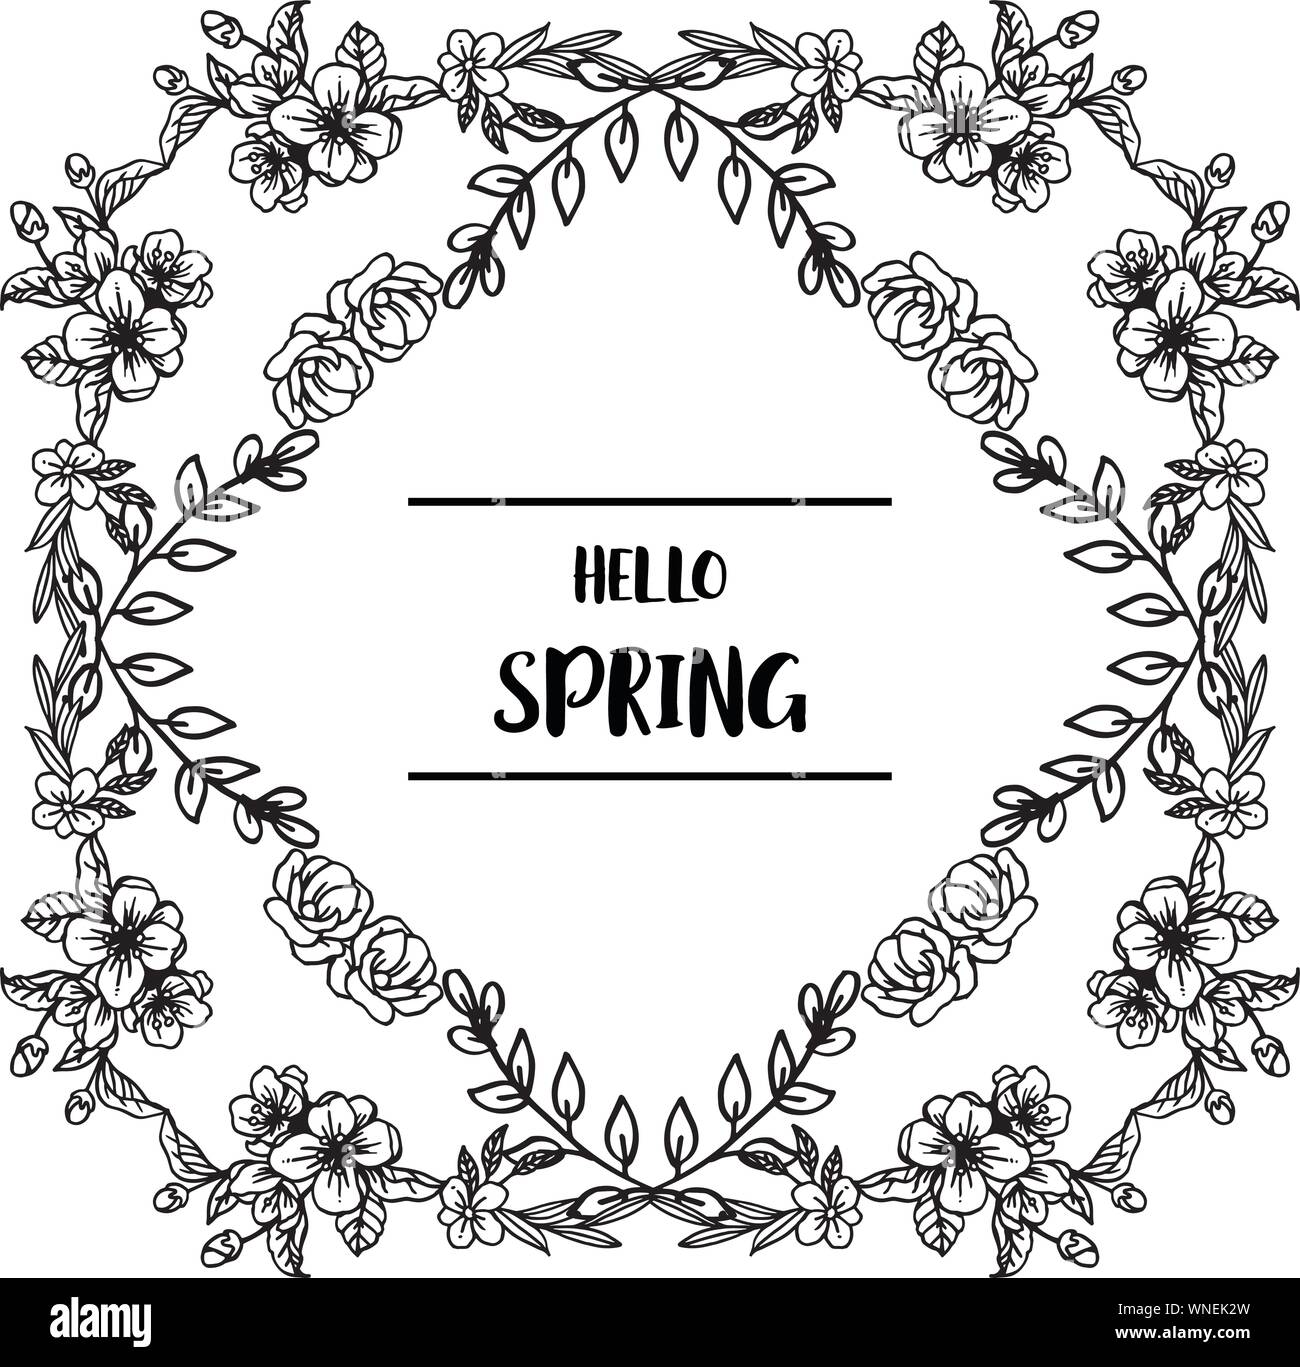 Design banner hello spring with texture of leaf floral frame elegant ...